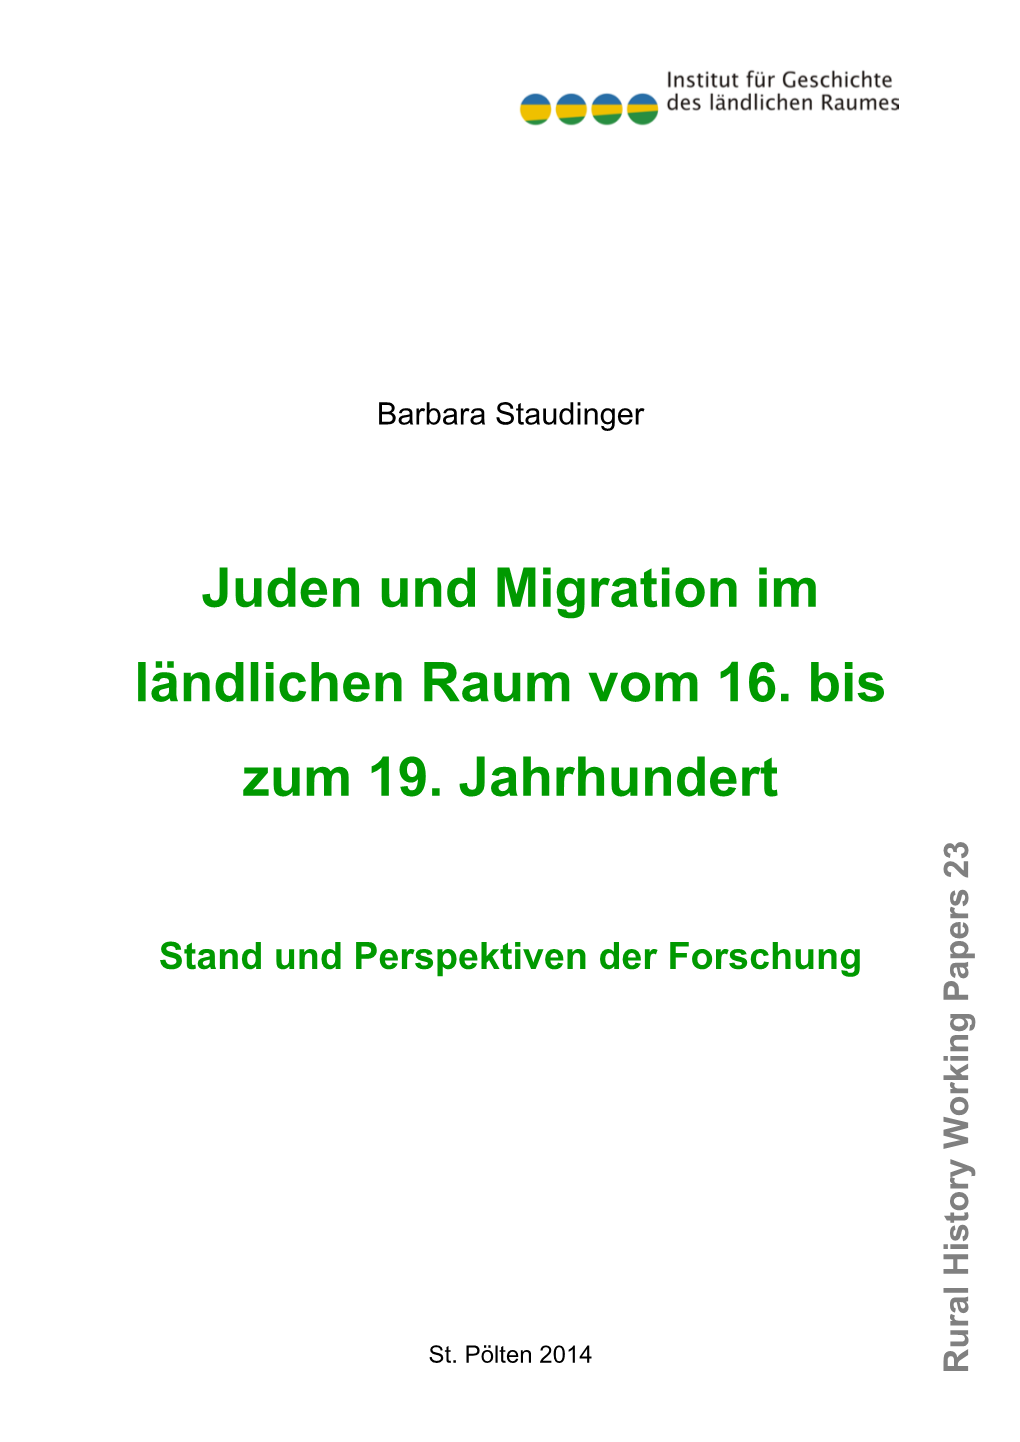 Juden Und Migration Im Ländlichen Raum Vom 16. Bis Zum 19